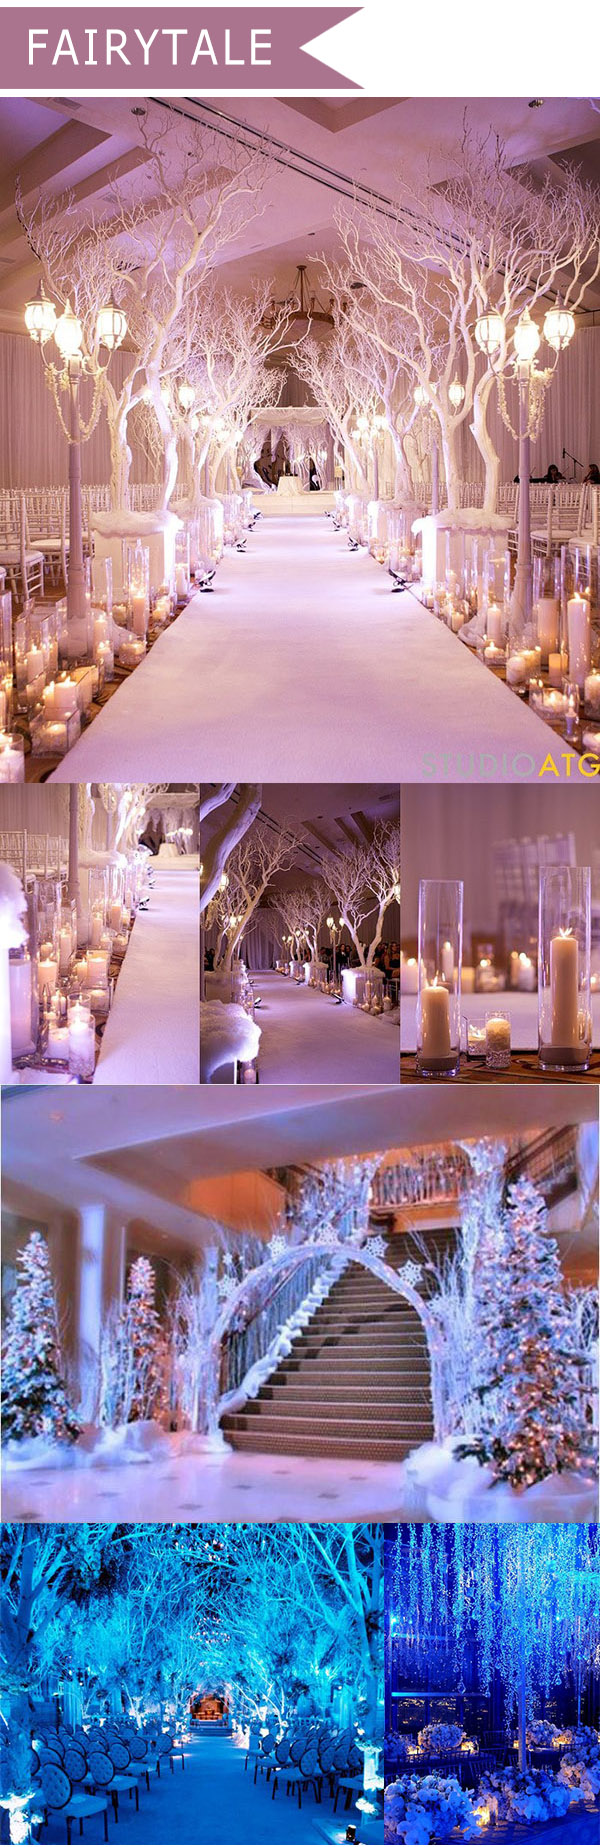 fairytale-themed-wedding-decoration-ideas 